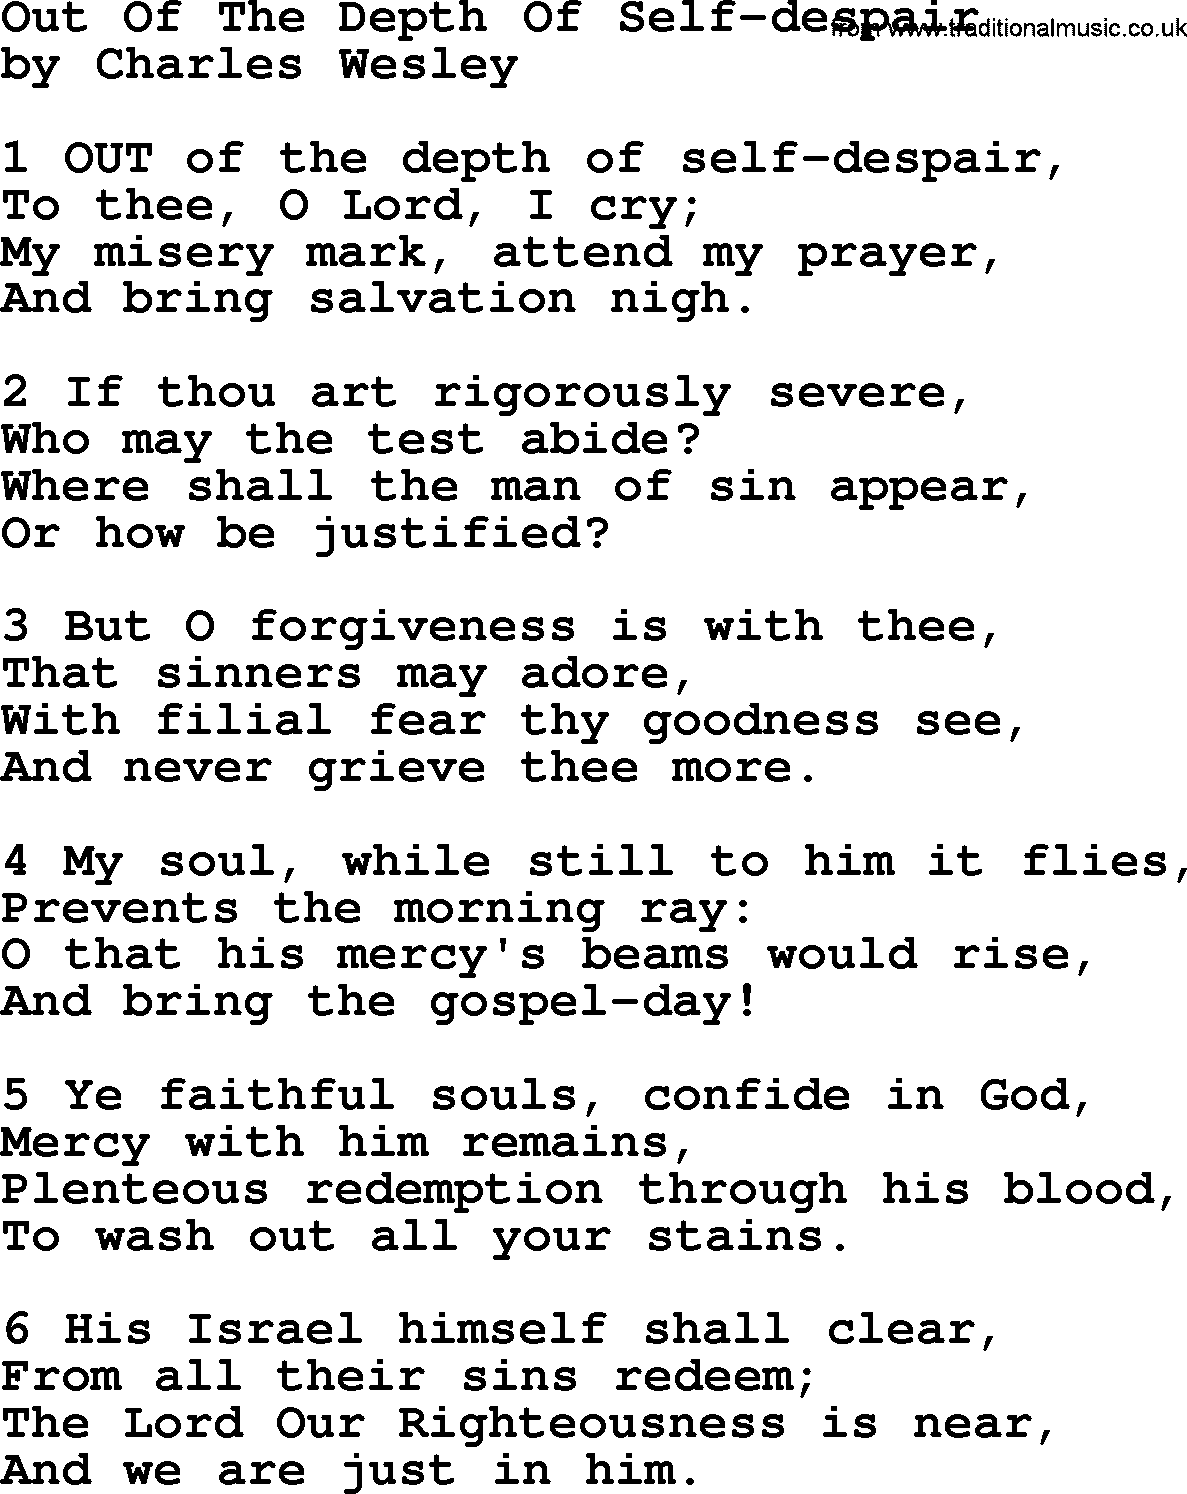 Charles Wesley hymn: Out Of The Depth Of Self-despair, lyrics